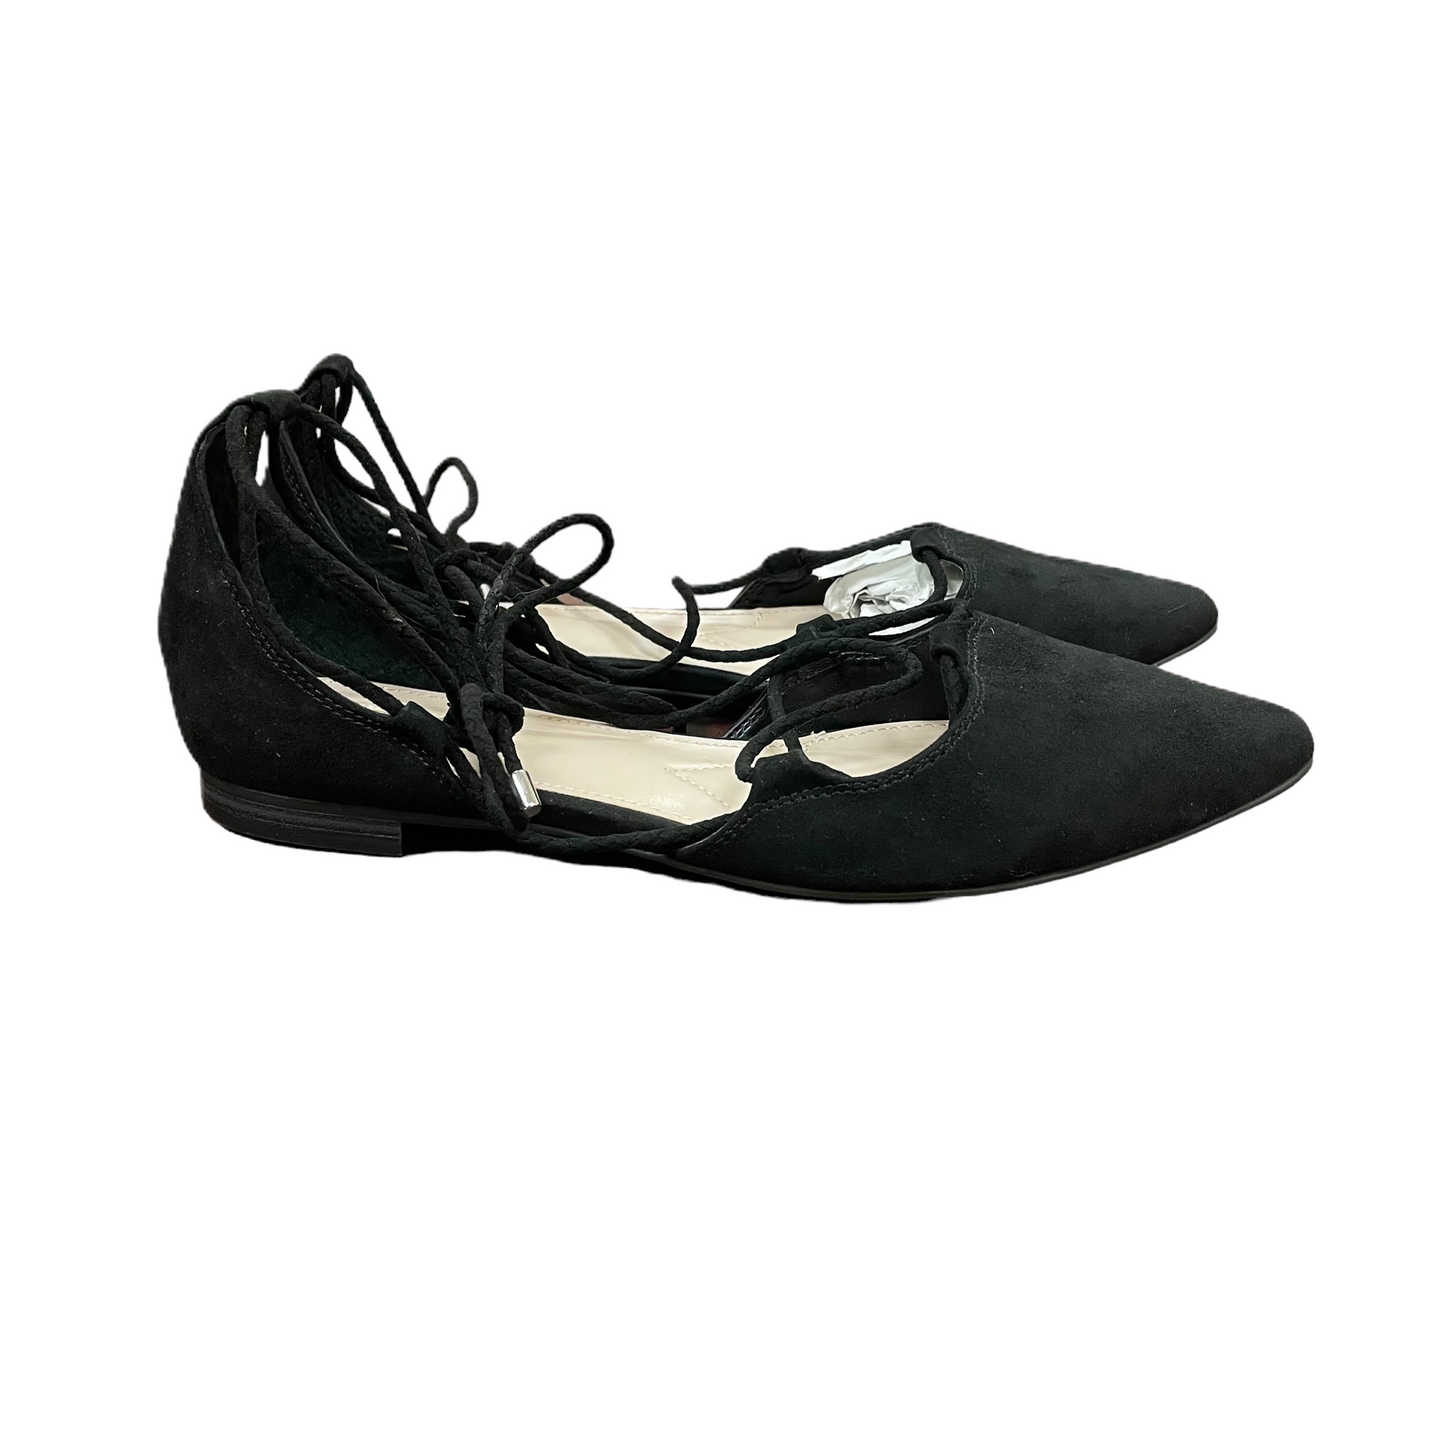 Black Shoes Flats By Jennifer Lopez, Size: 7.5